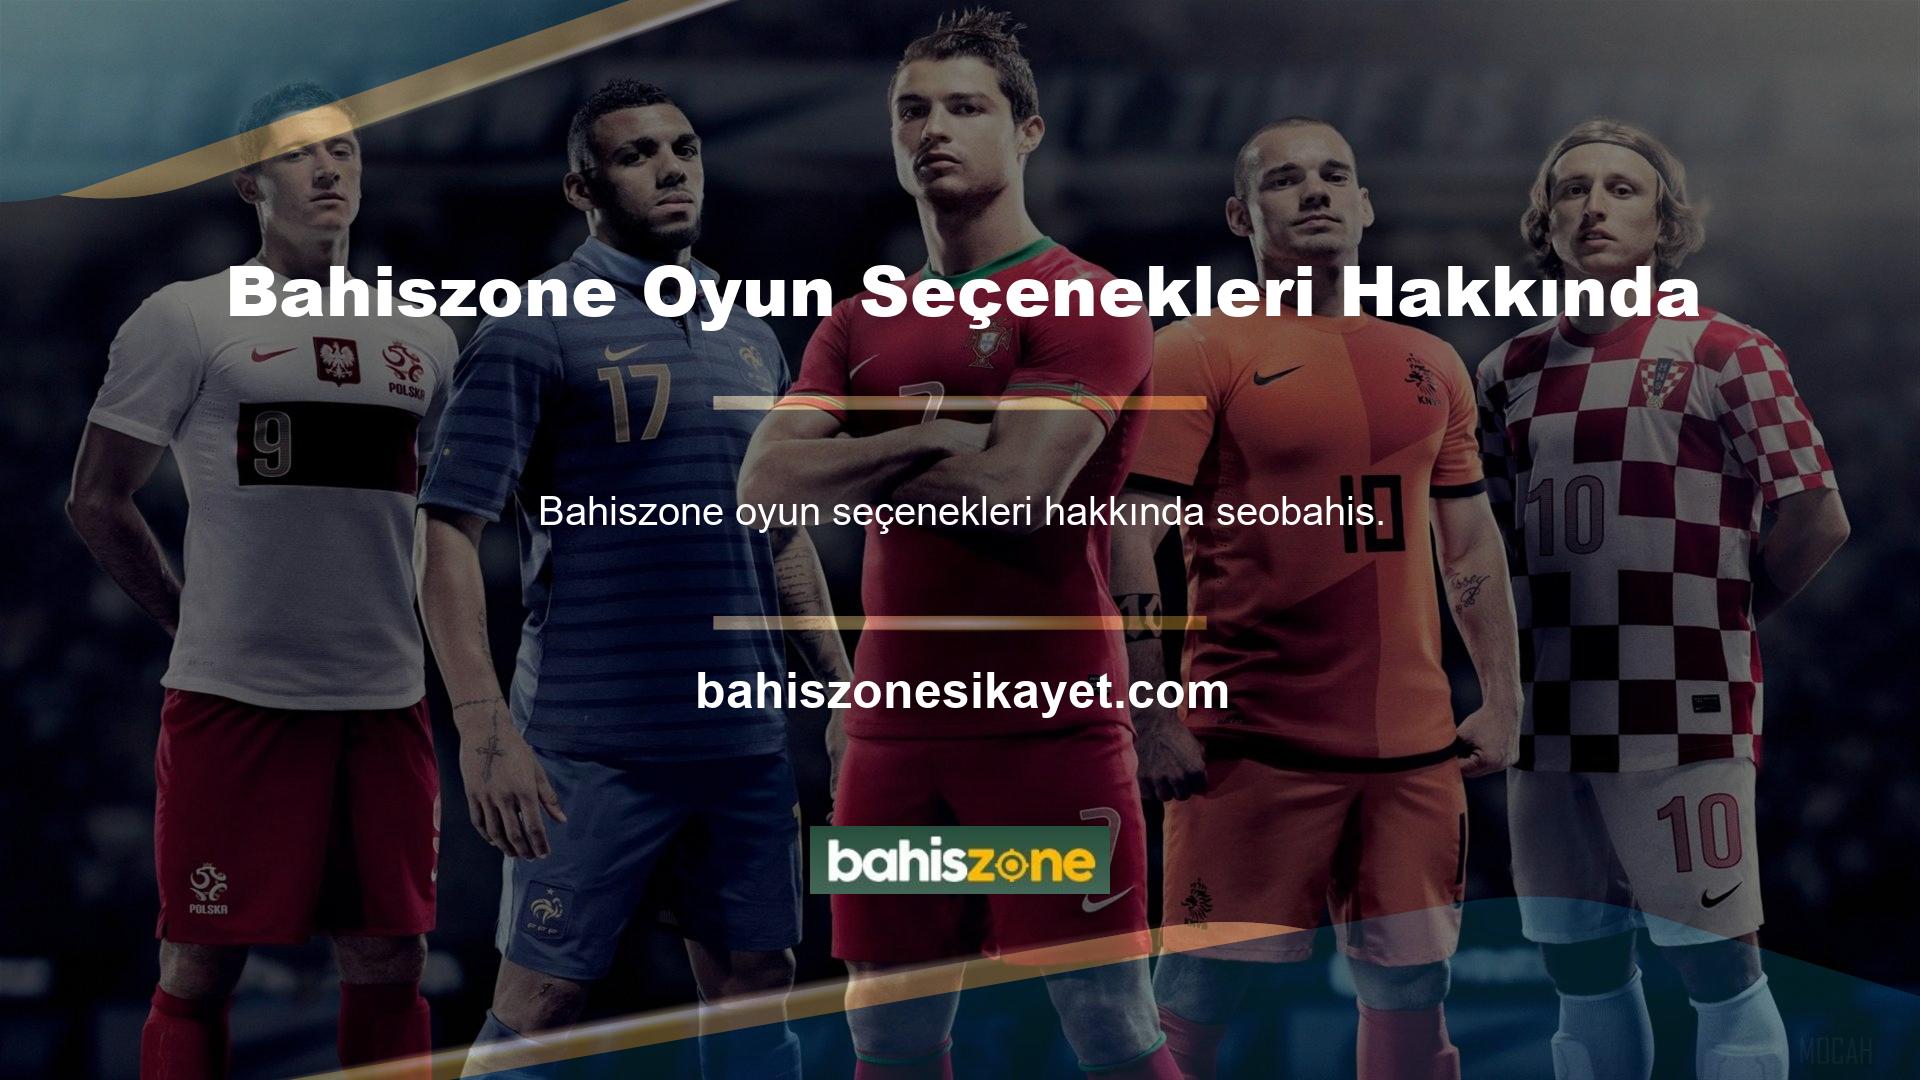 com, Türk oyunlarını sevenler için geniş bir oyun yelpazesi sunarak Türkiye'de güvenilir bir hizmet vermeye devam ediyor